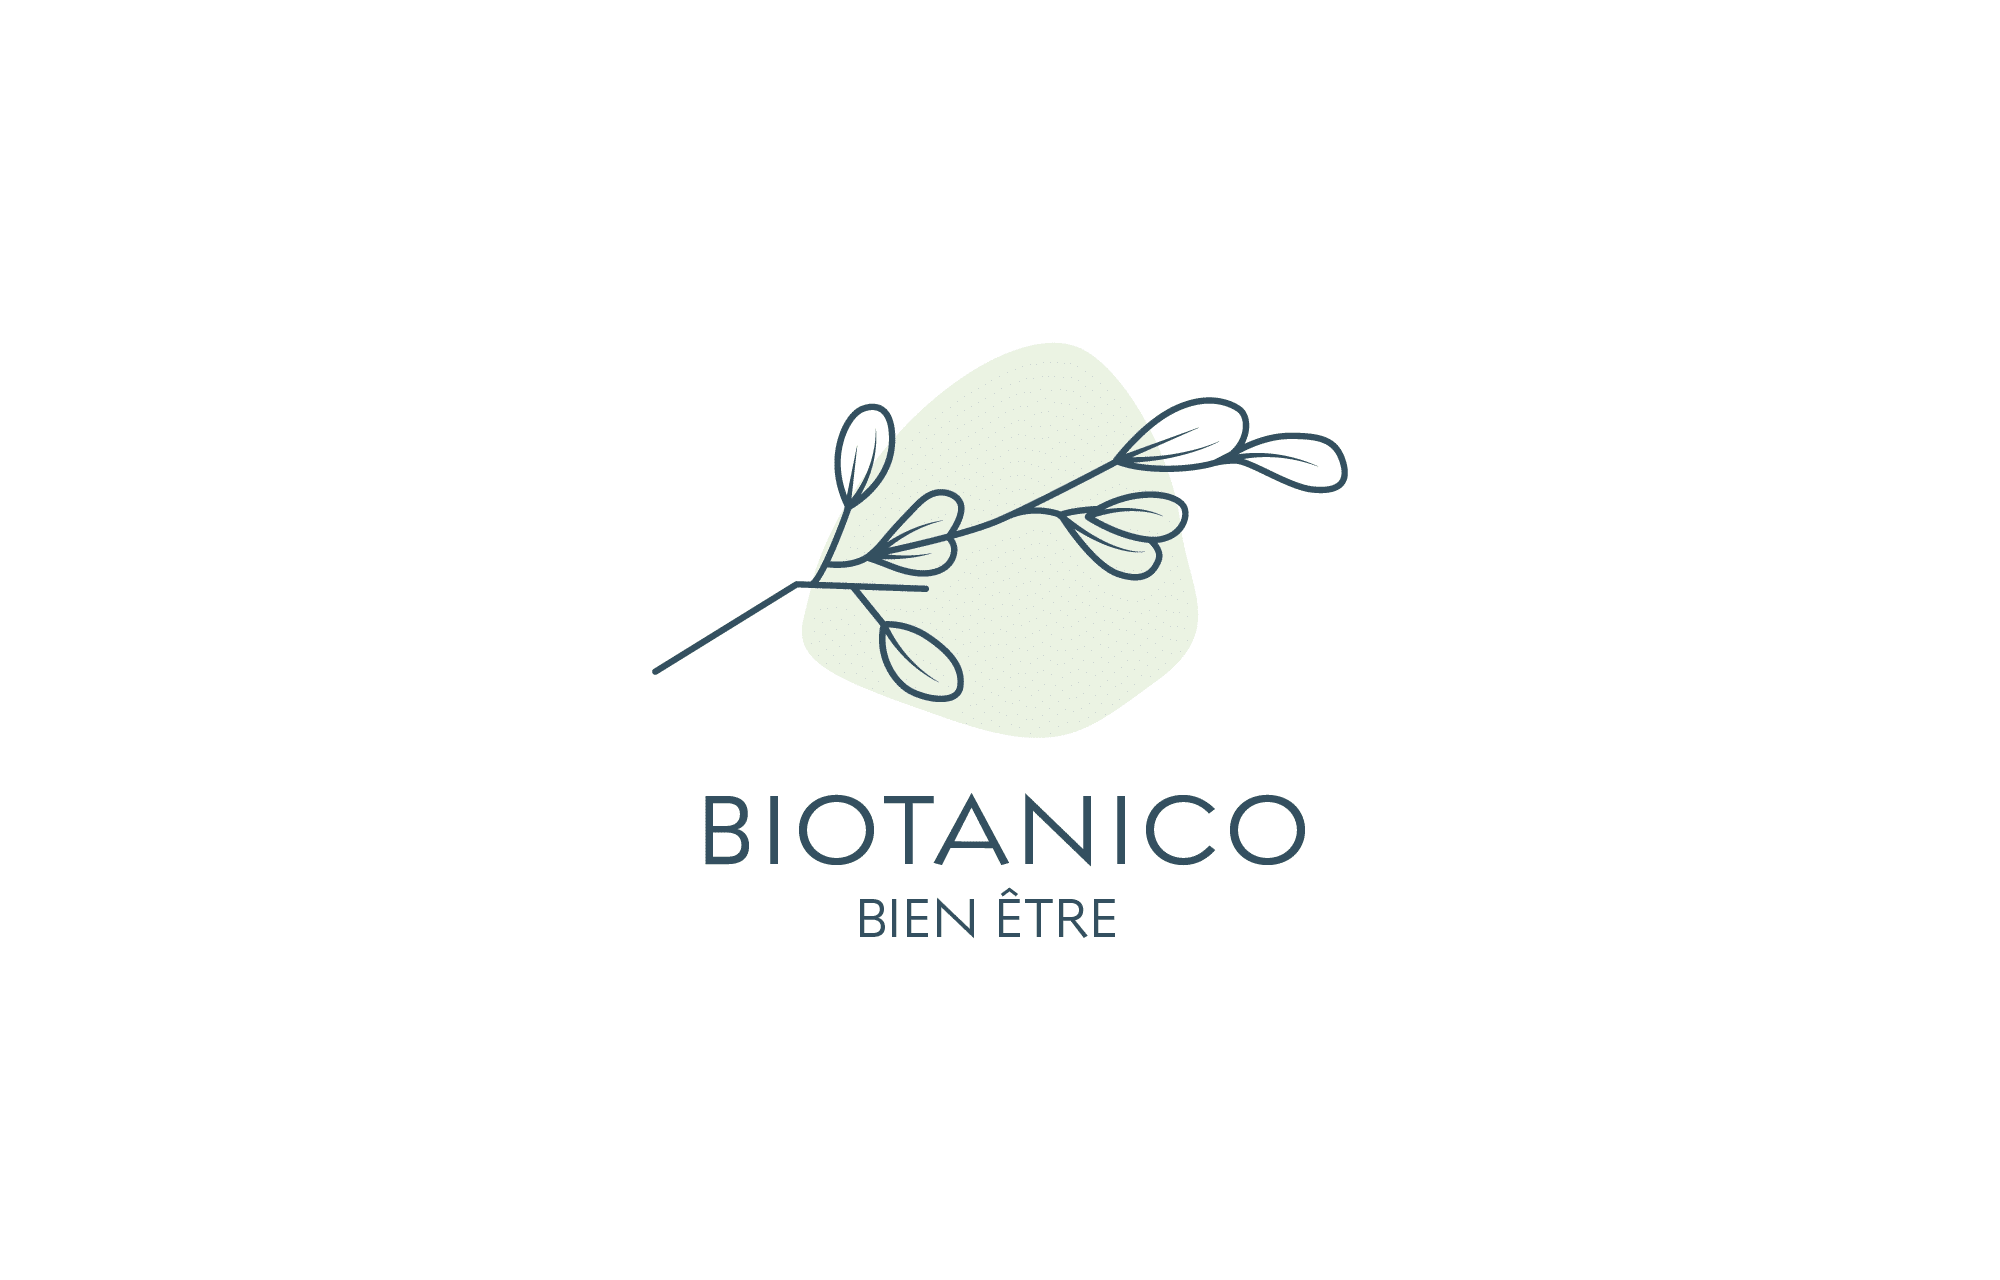 Biotanico